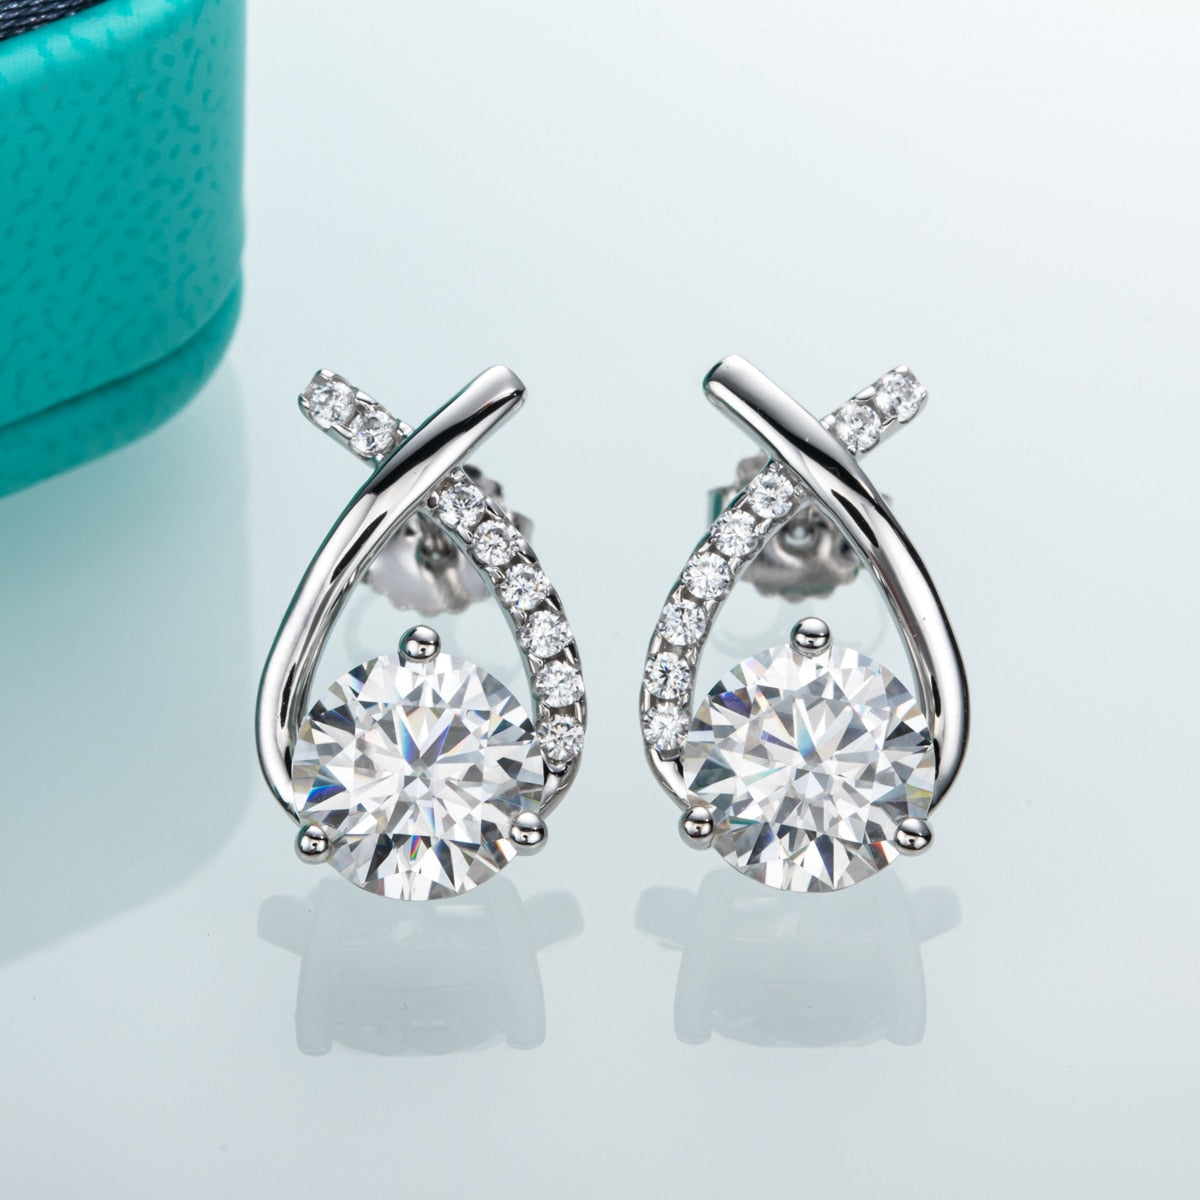 Holloway Jewellery 2ct Moissanite Diamond Stud Earrings